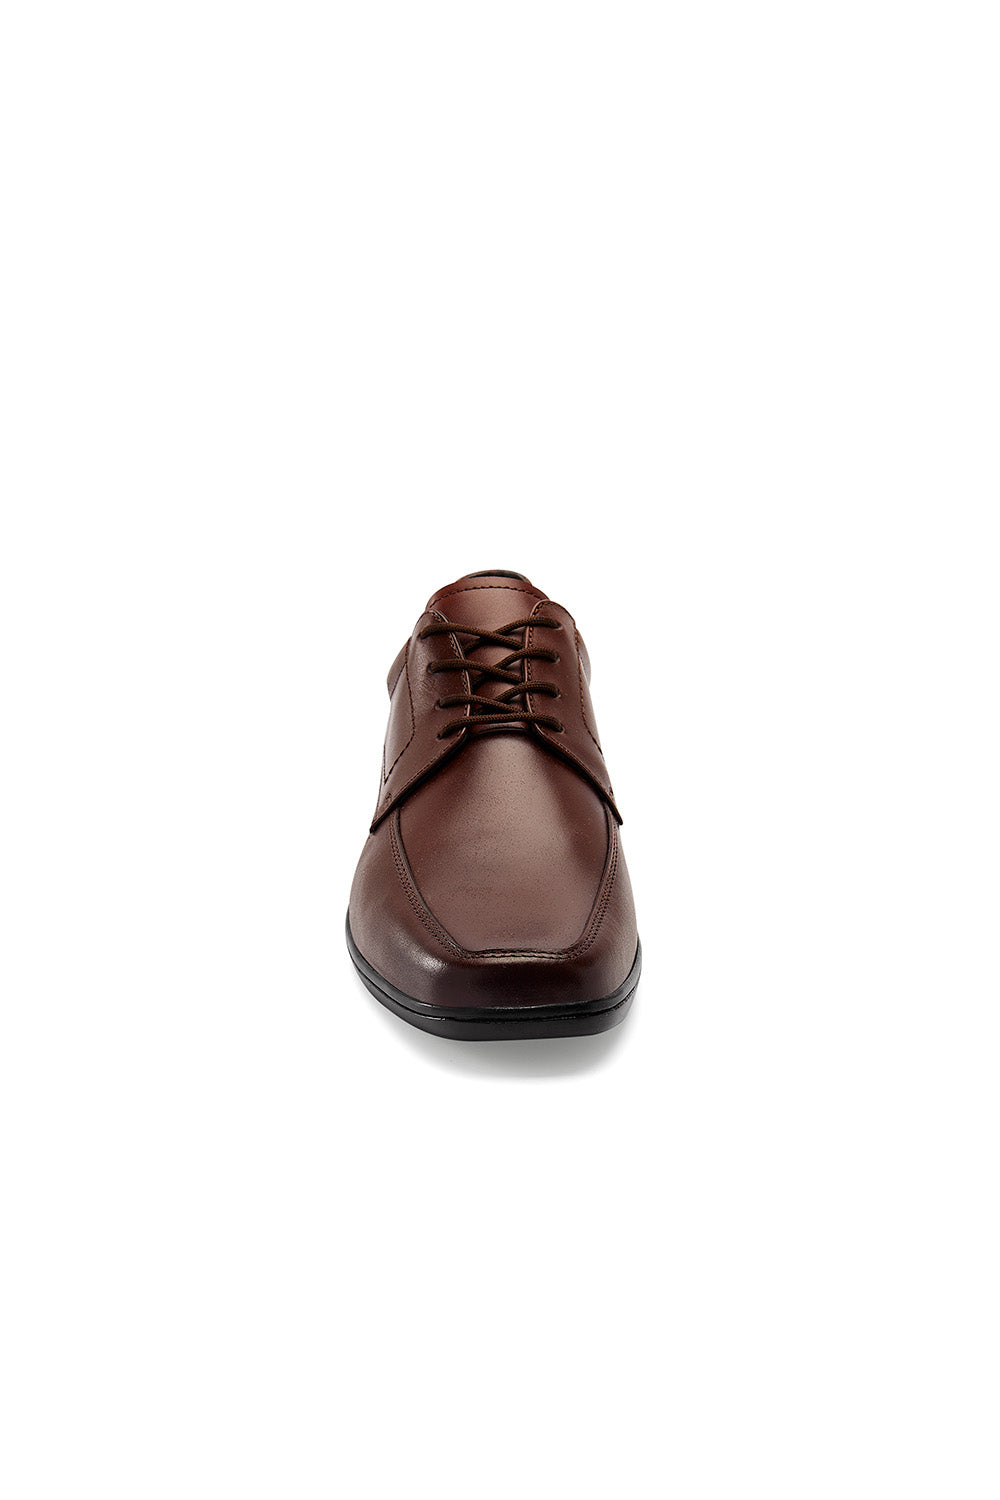 Zapato Formal para Hombre Ajuste Cordones Café Mundo Terra